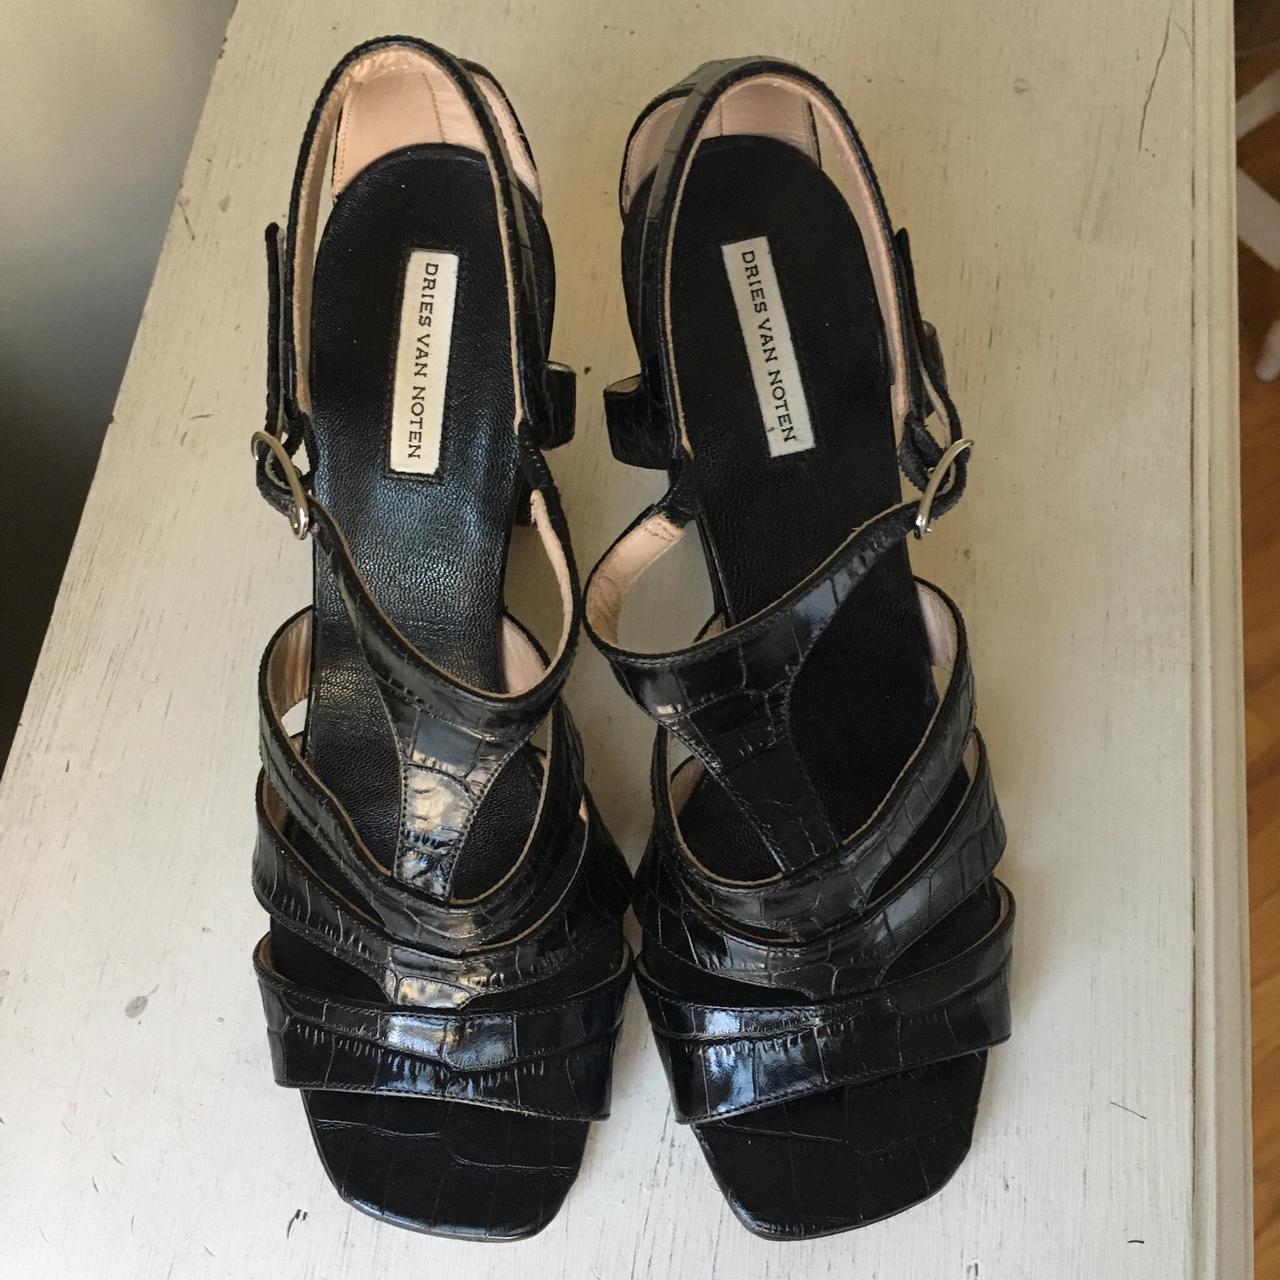 Dries Van Noten Women's Black Sandals